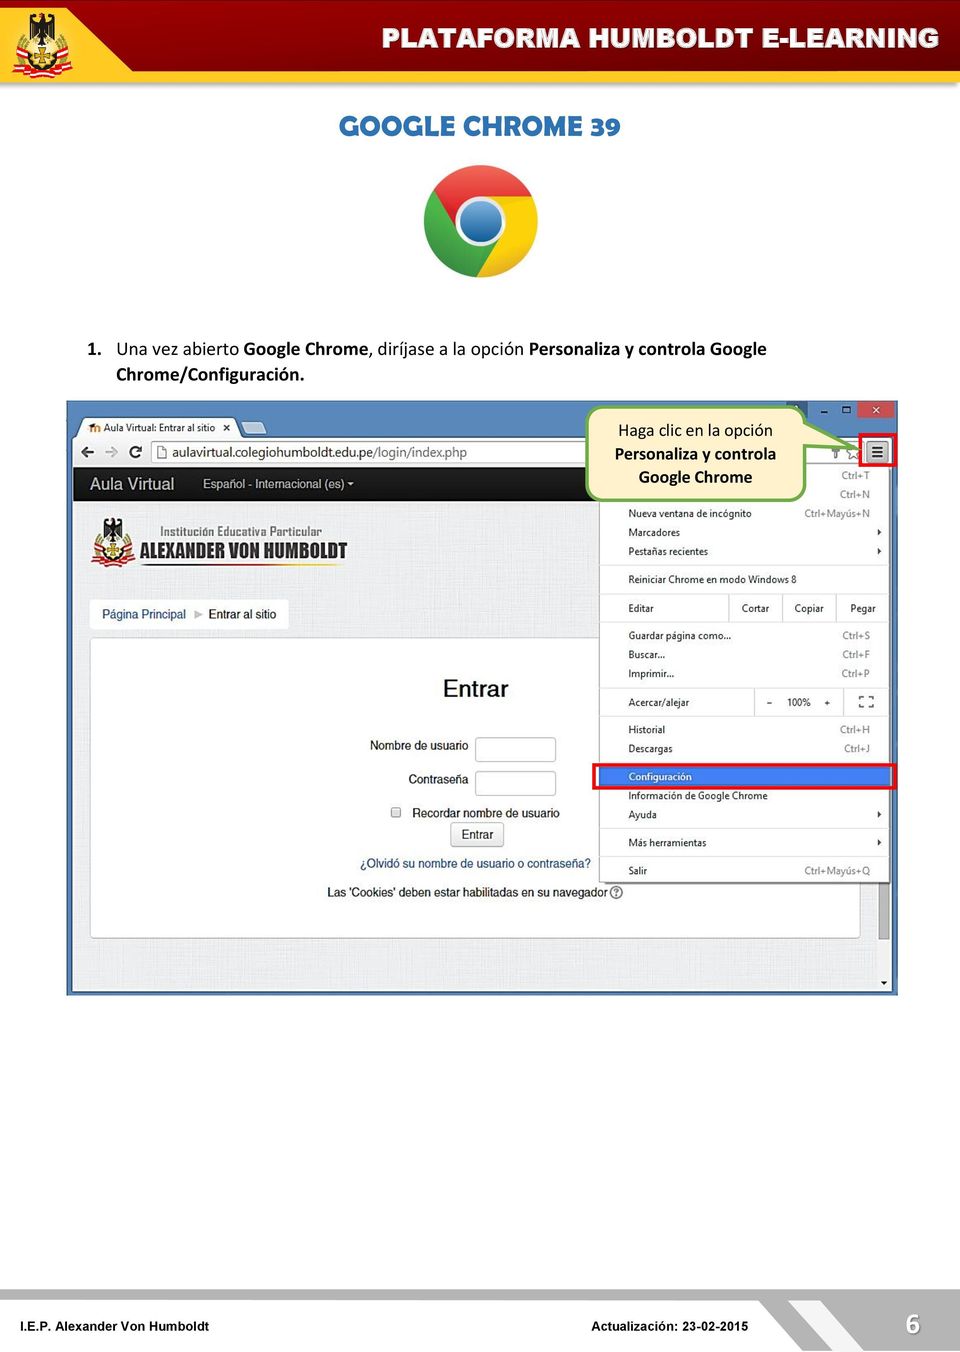 Personaliza y controla Google Chrome/Configuración.